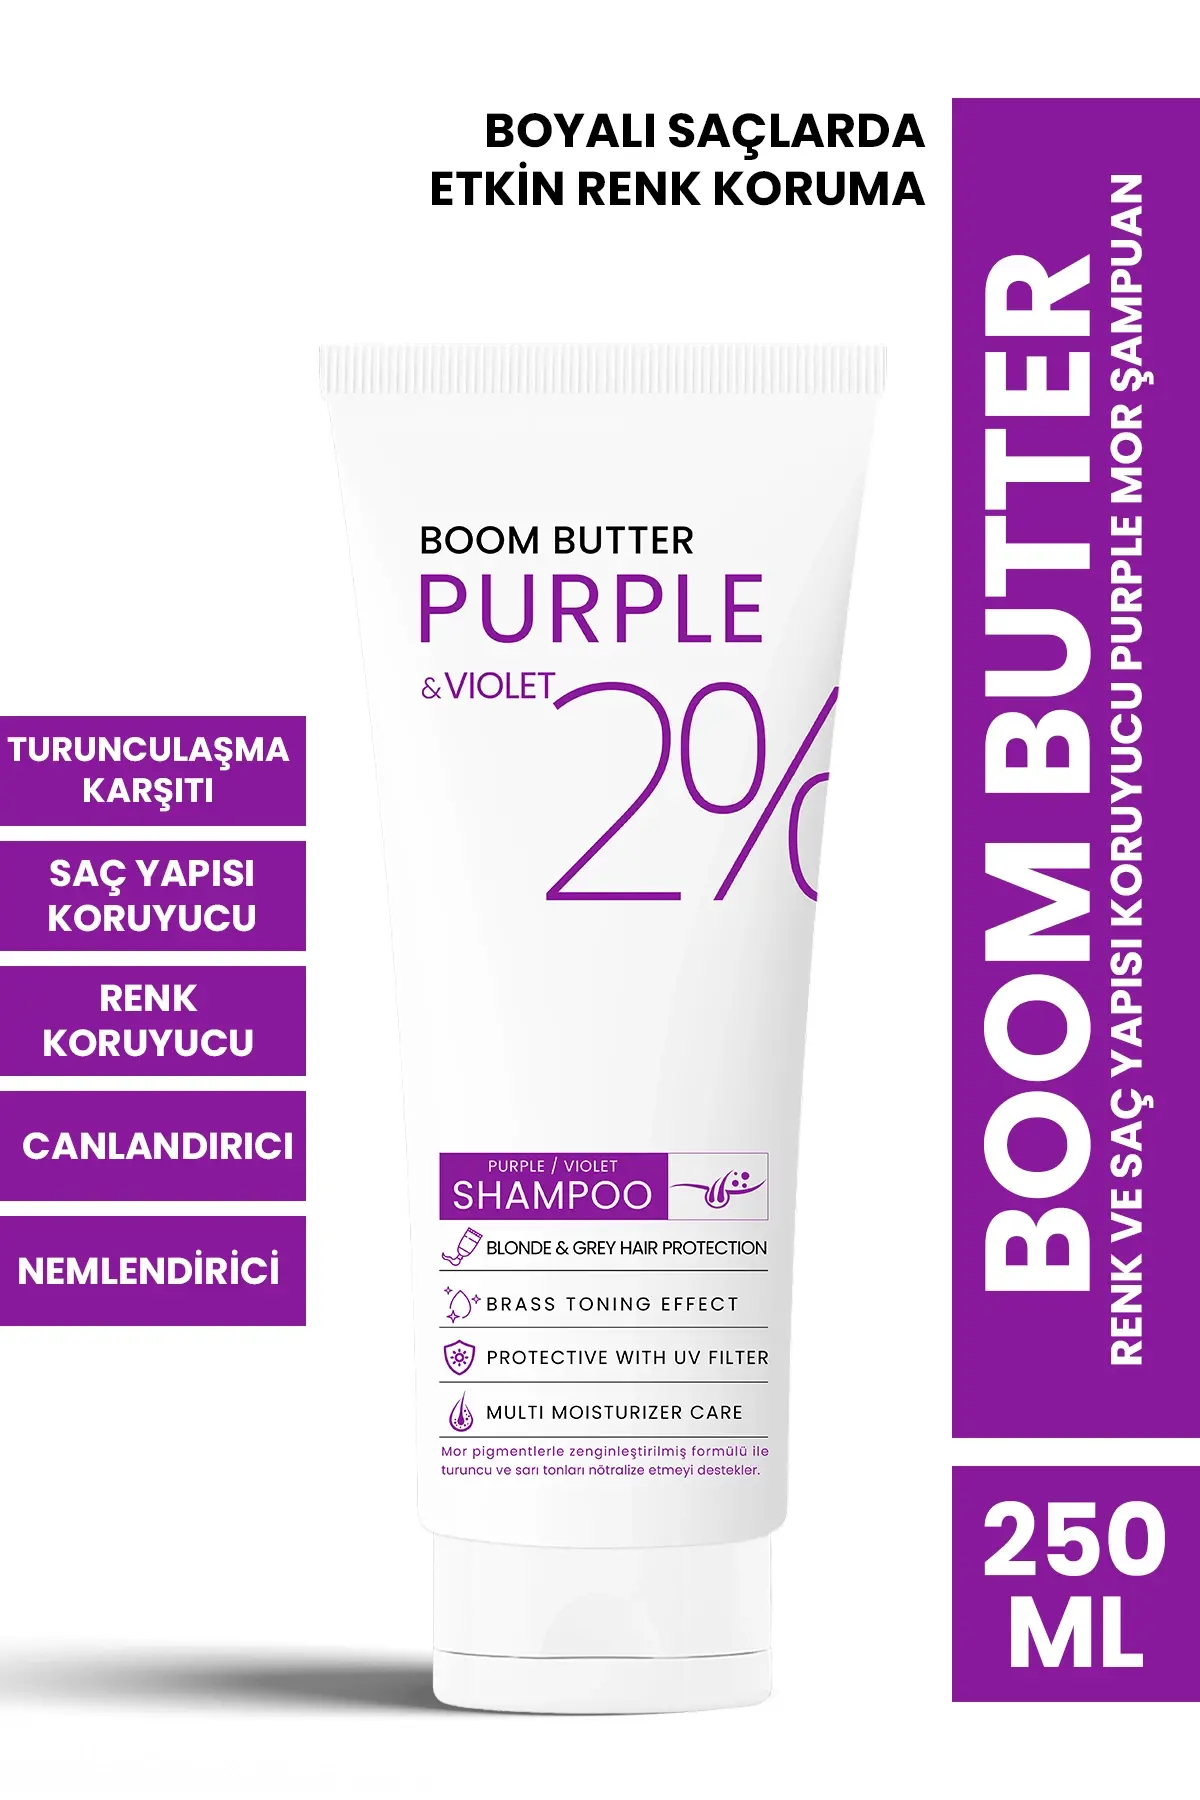 BOOM BUTTER Renk ve Saç Yapısı Koruyucu Purple Mor Şampuan 250 ML - 1